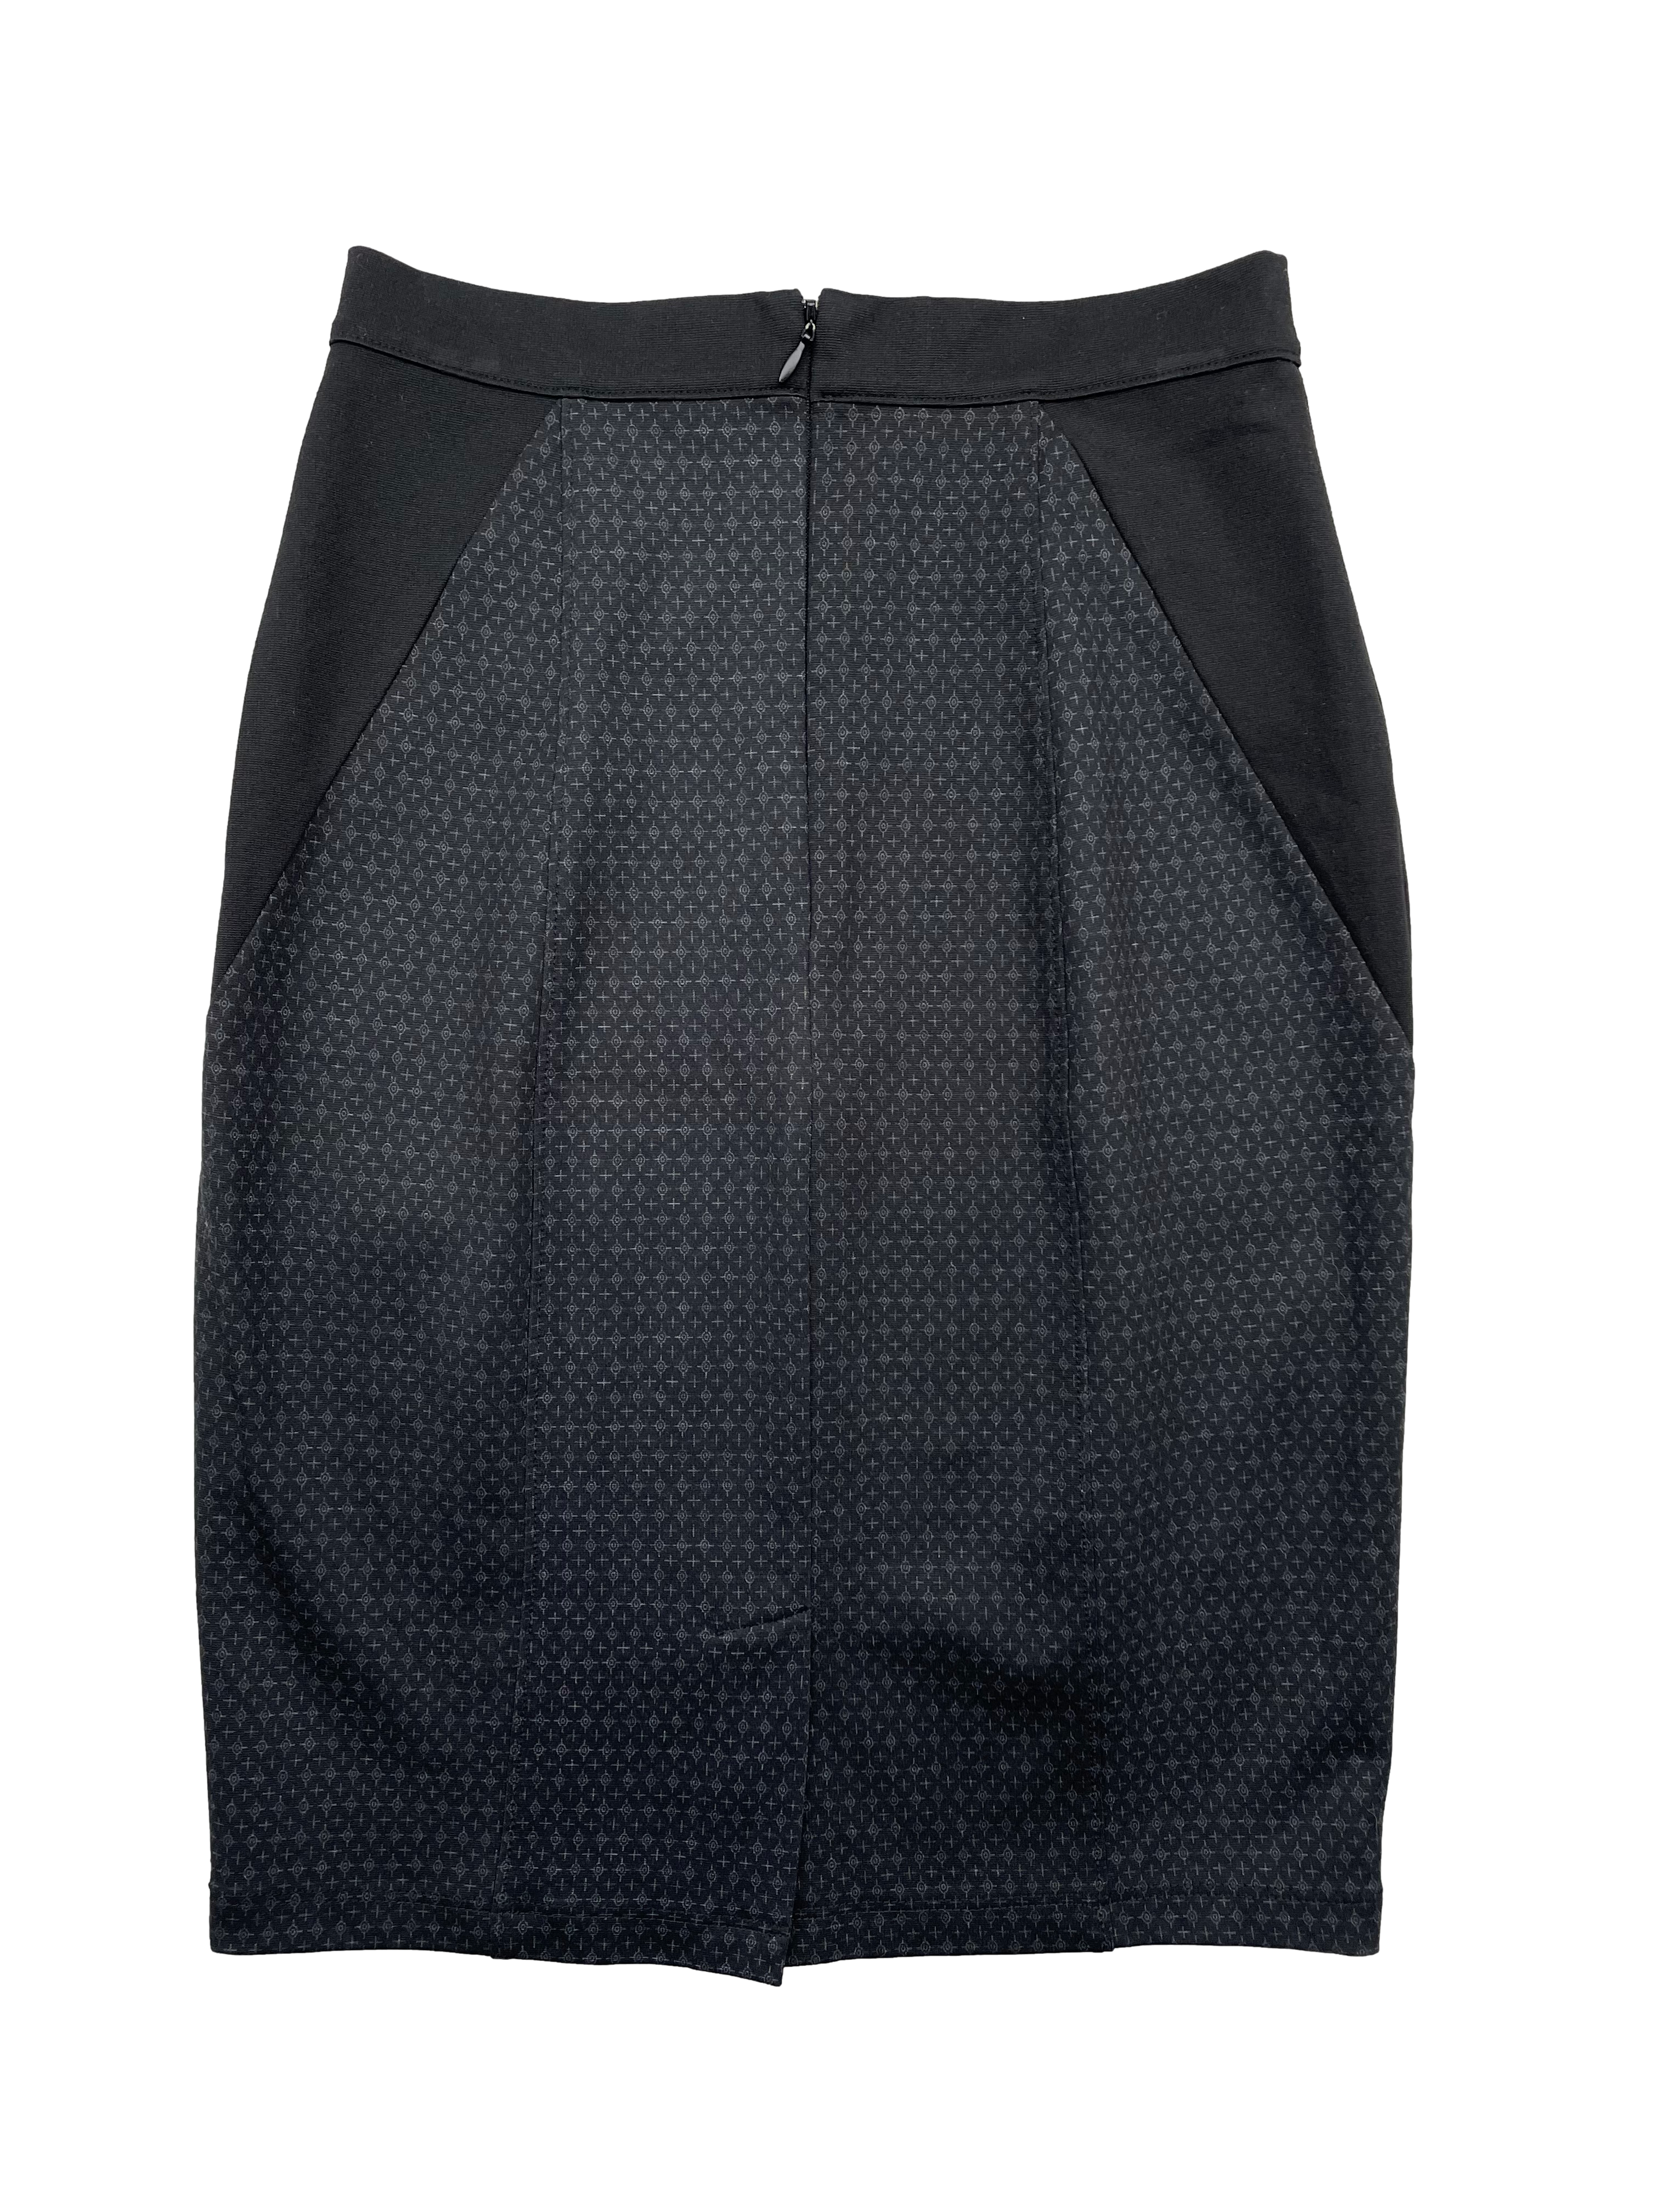 Falda negra Elizabeth Lozano tela stretch con estampado de cruces, corte lápiz y cierre invisible. Cintura 60cm sin estirar, Largo 55cm.